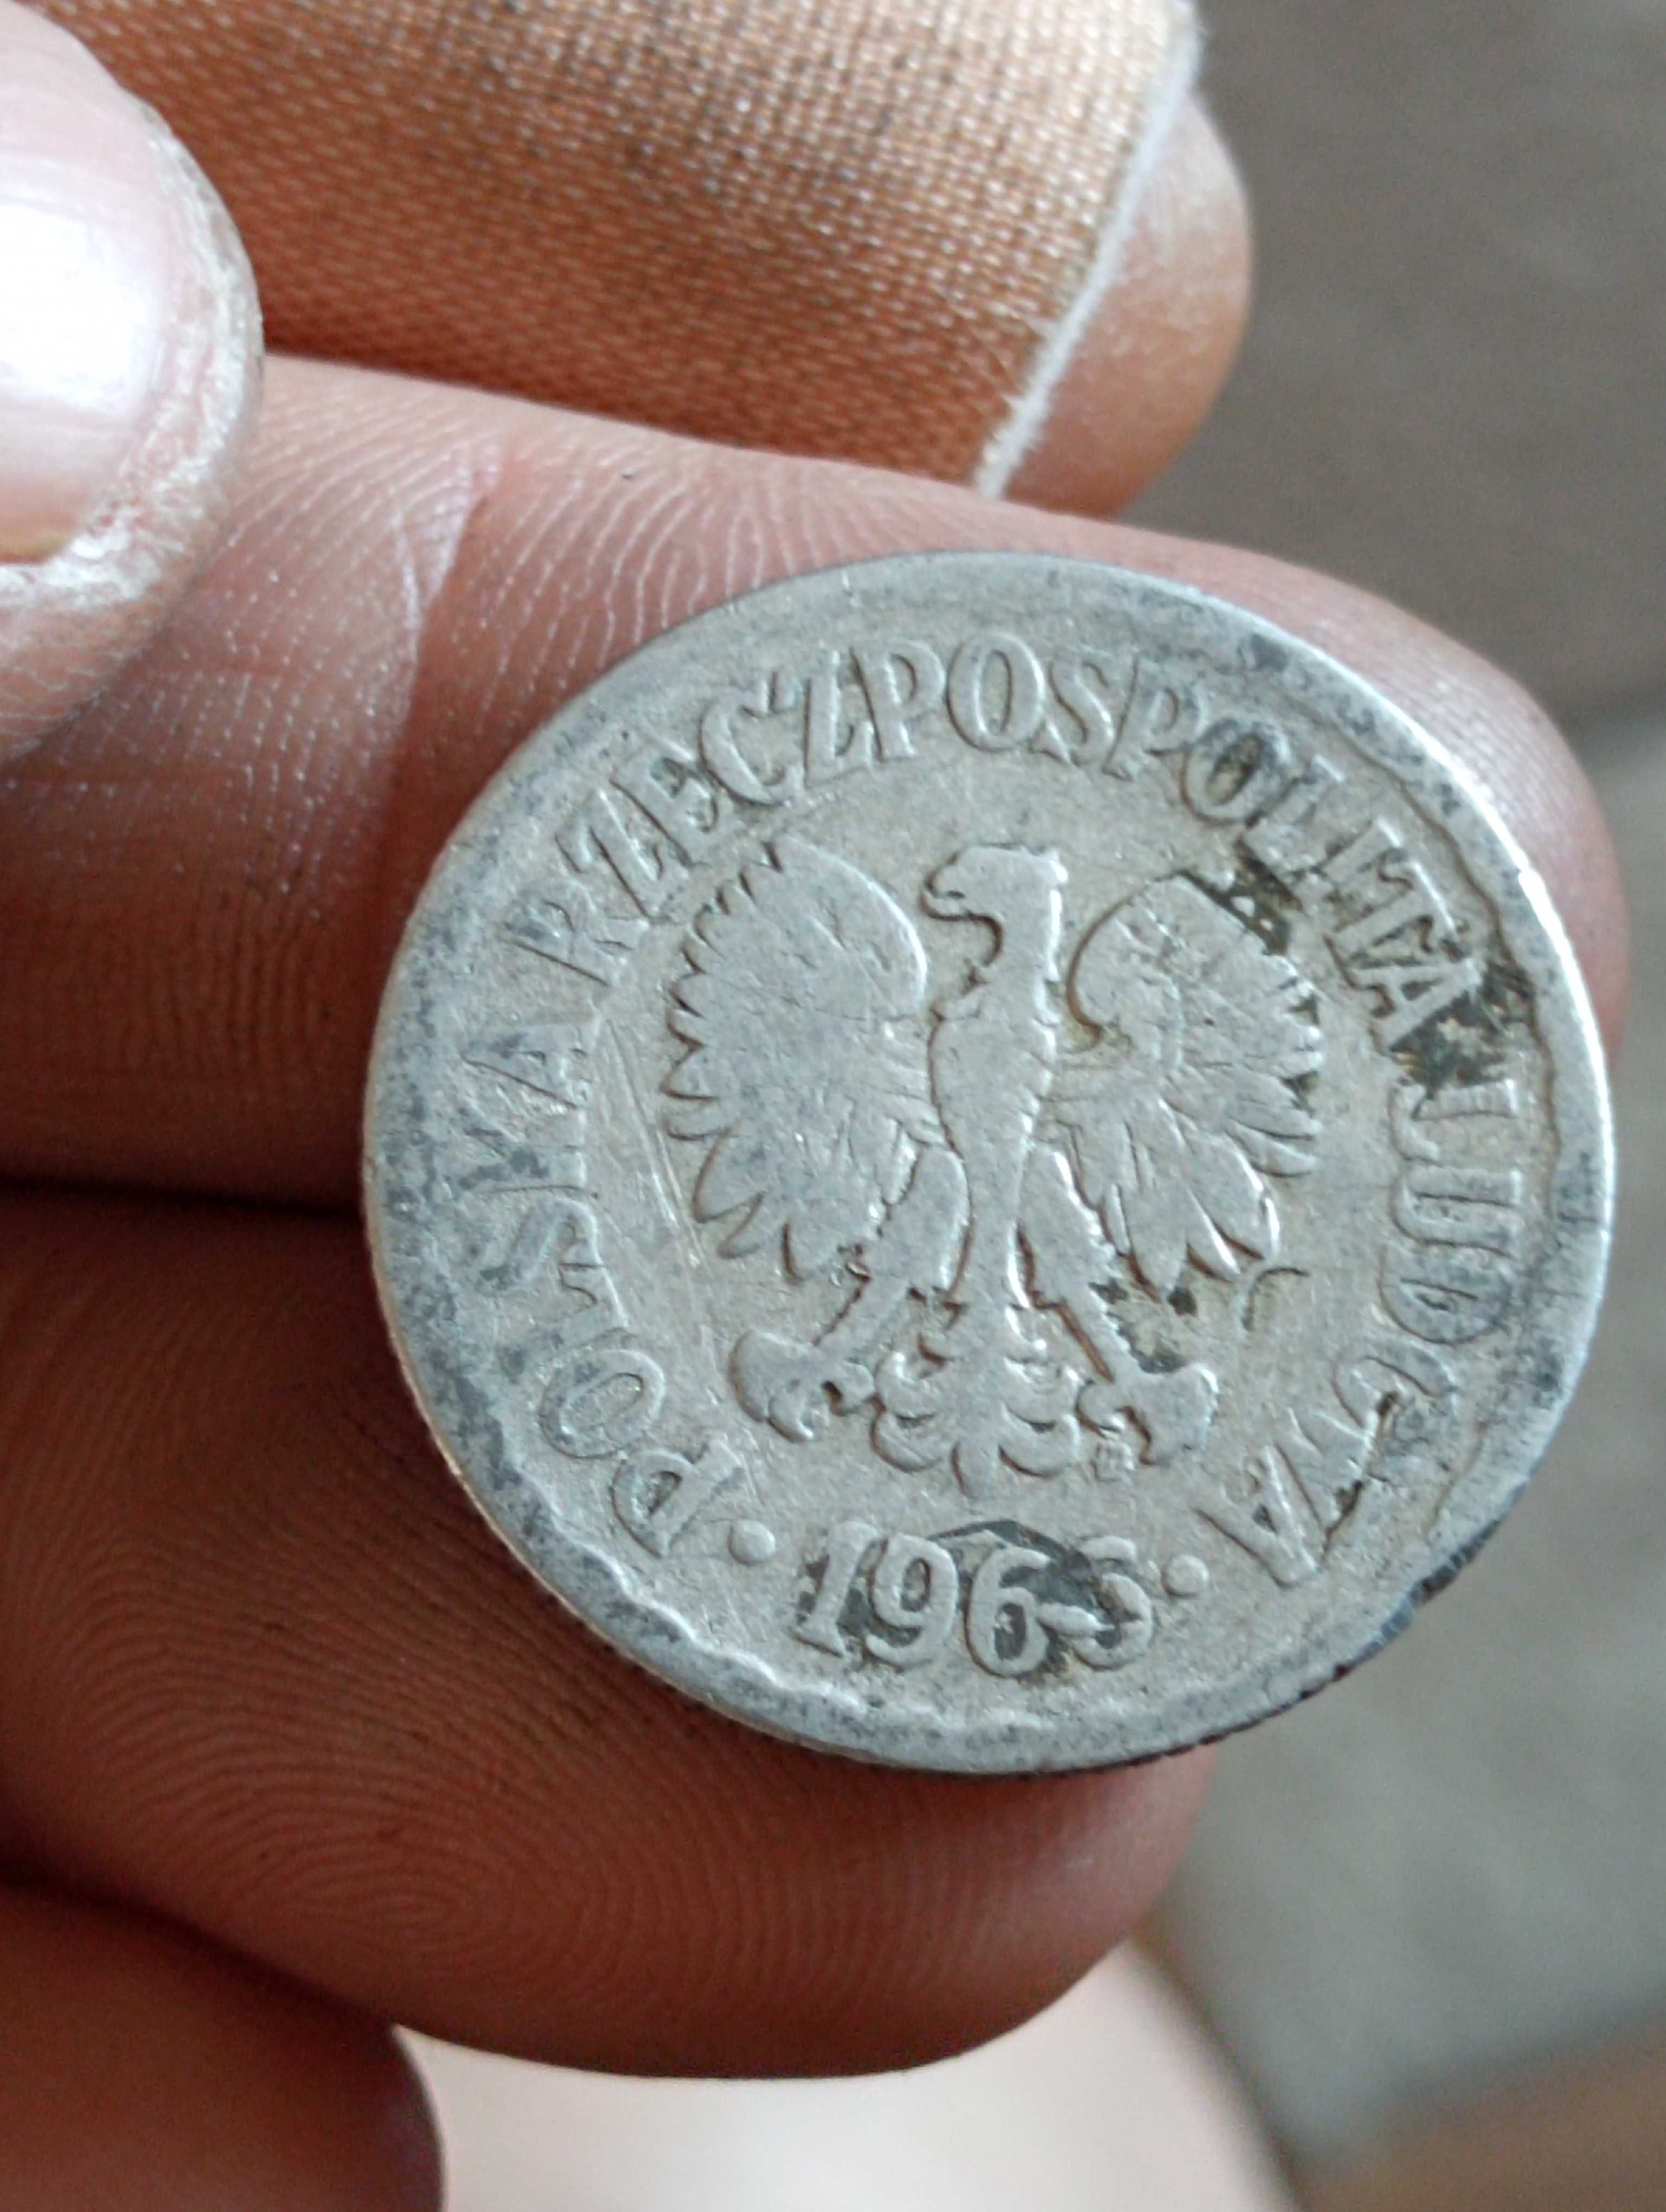 Sprzedam monete 1 zloty 1966 r